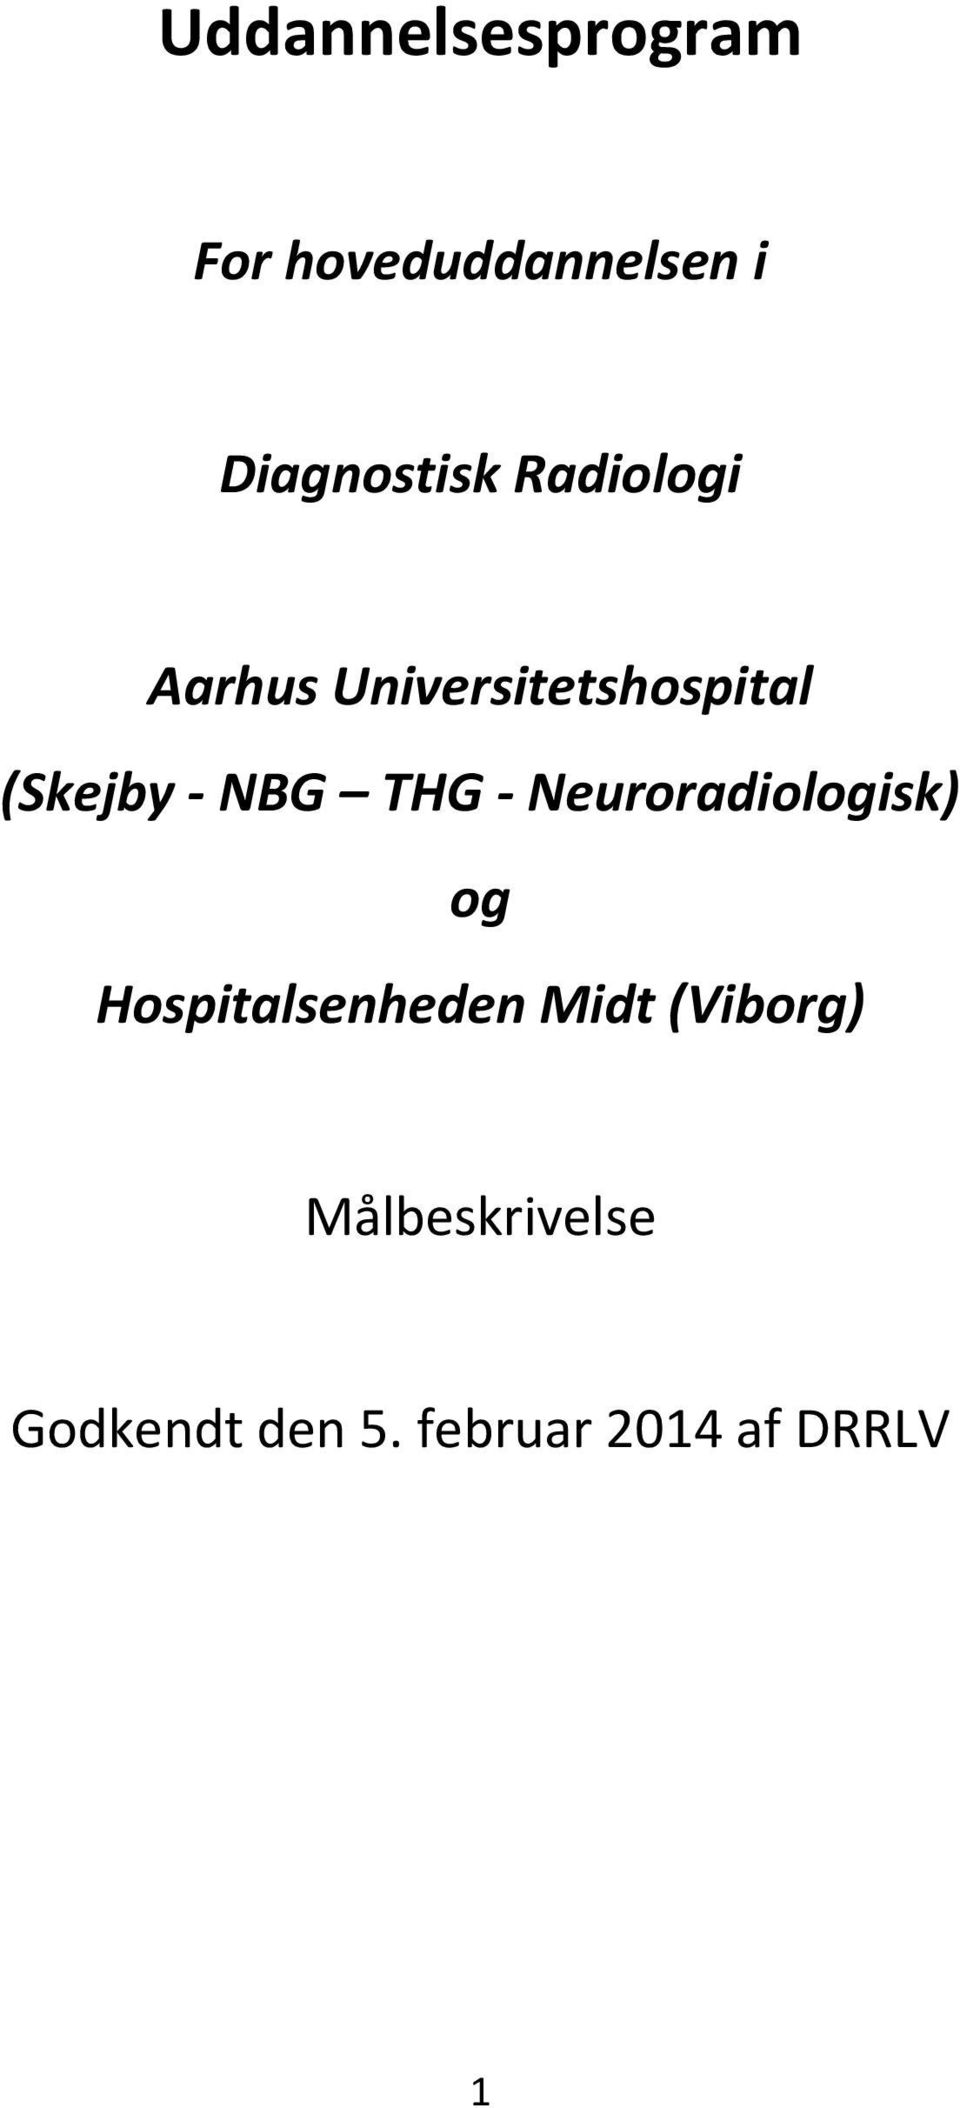 Neuroradiologisk) og Hospitalsenheden Midt (Viborg)